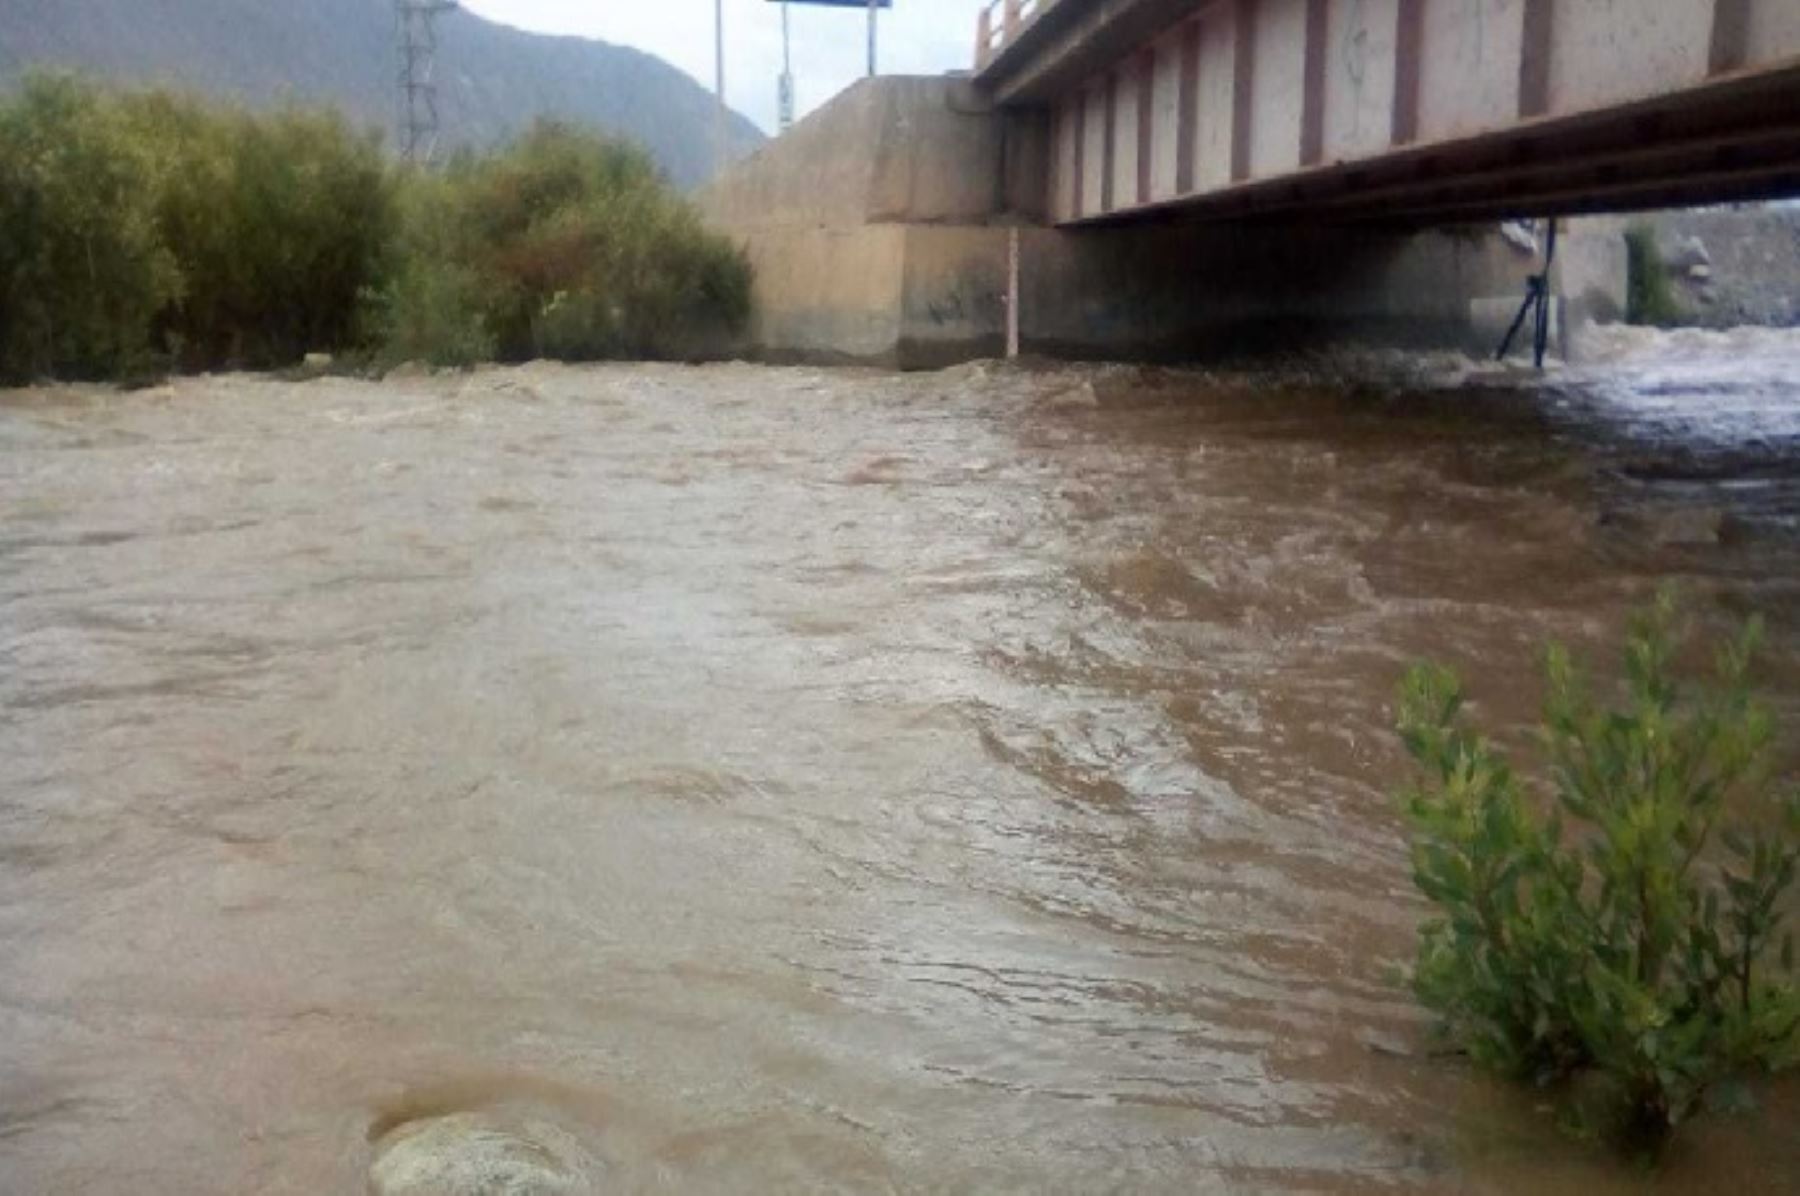 El Centro de Operaciones de Emergencia Regional (COER) de Áncash confirmó el incremento del caudal del río Nepeña, debido a lluvias intensas que soportan desde hace días las zonas altas de los distritos de Cáceres del Perú y Moro, en la provincia del Santa.